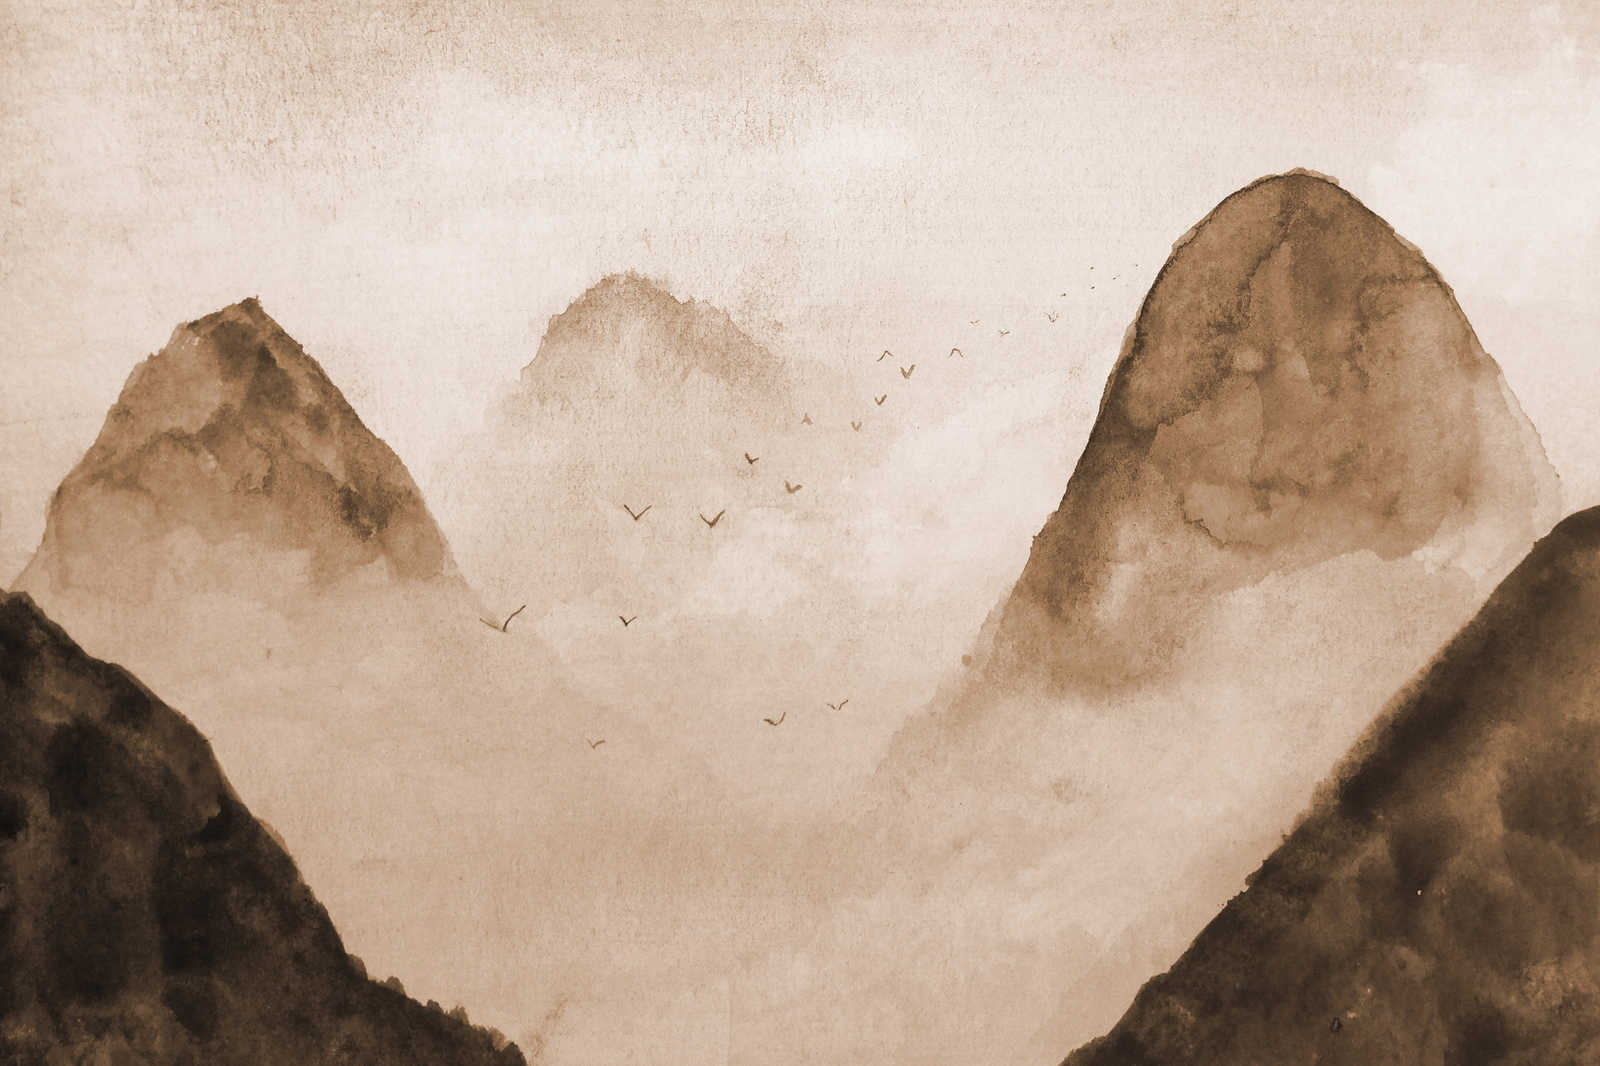             Canvas Fog Landscape - 0,90 m x 0,60 m
        